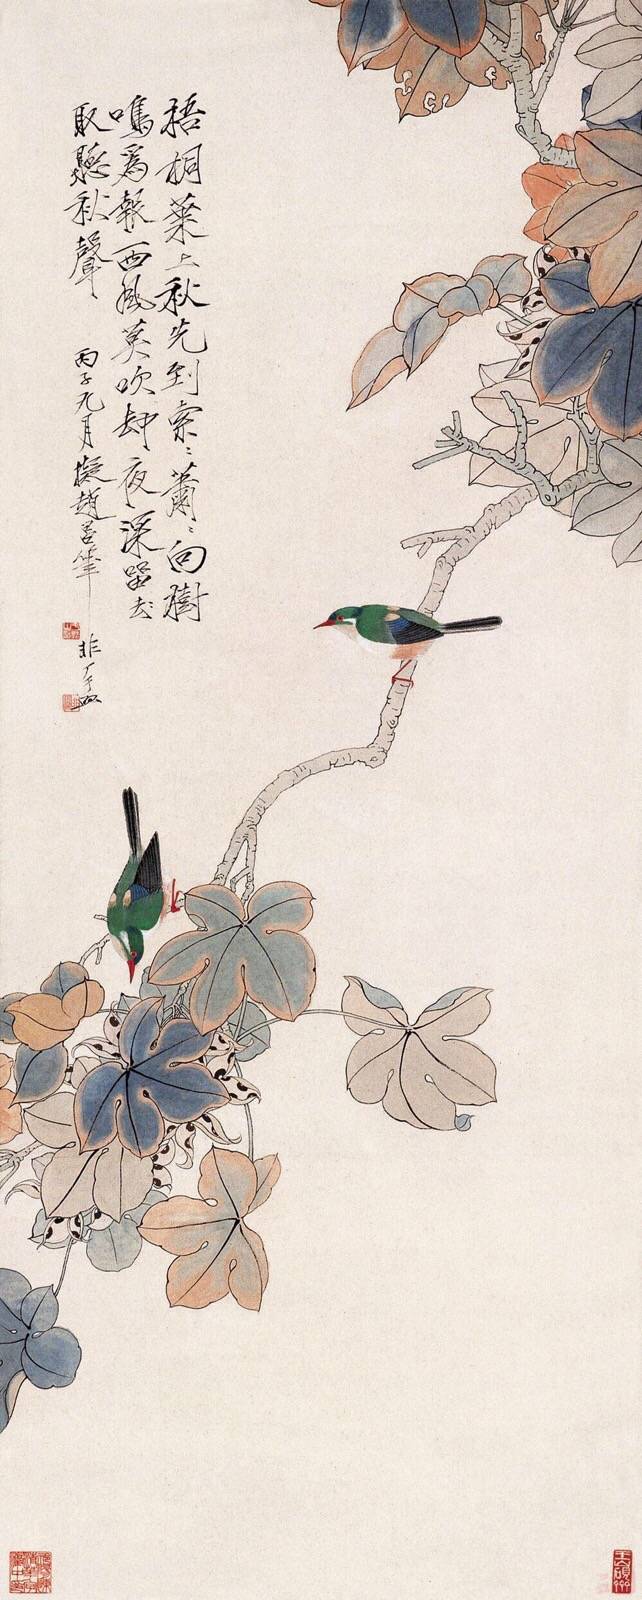 20世纪北方"京派"工笔花鸟画的杰出代表,其工谨明丽,重色浓妆的工笔画